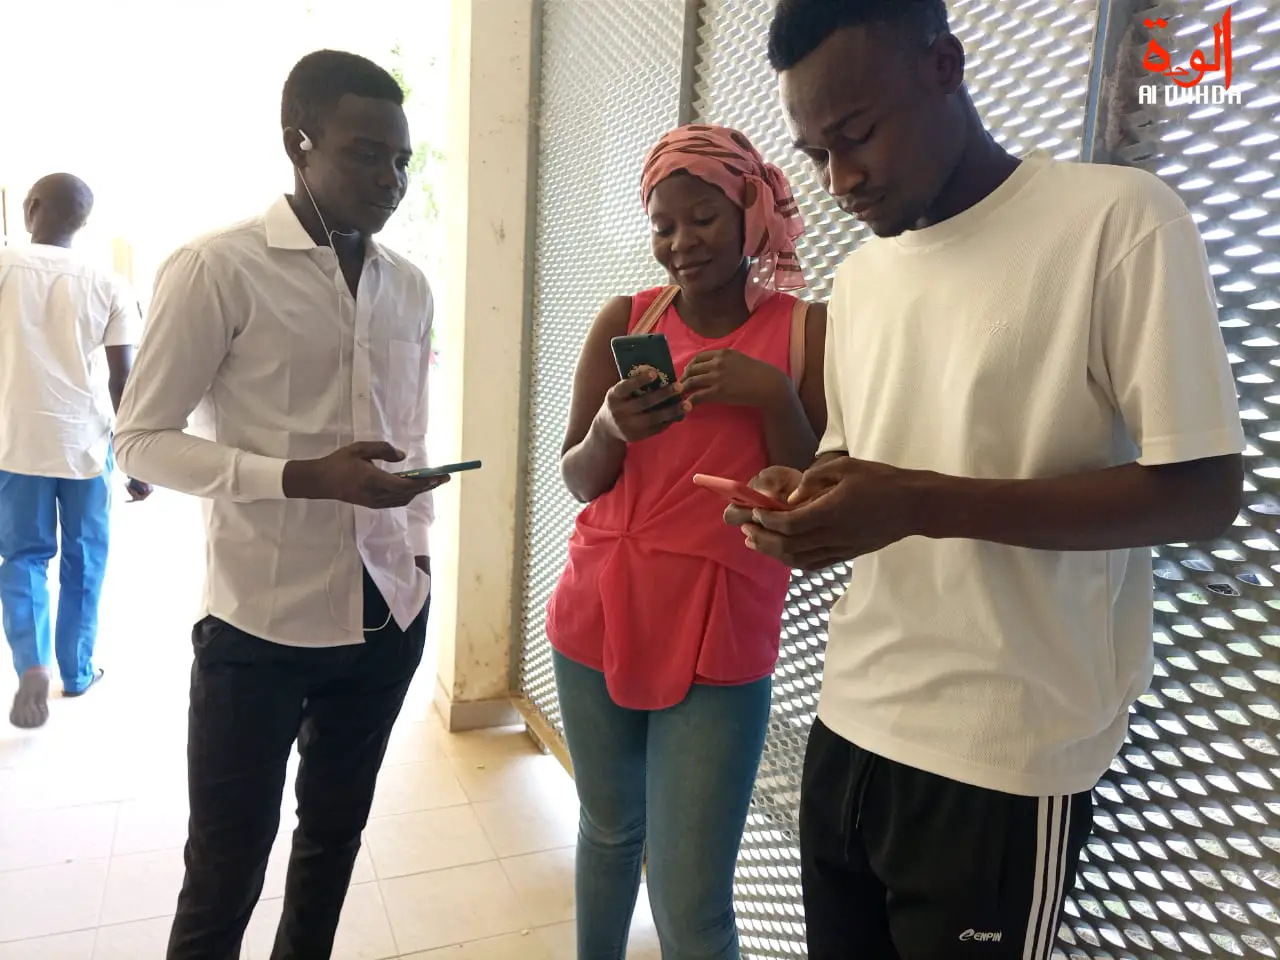 Tchad : accès à Internet et usage des outils numériques, des défis pour les étudiants